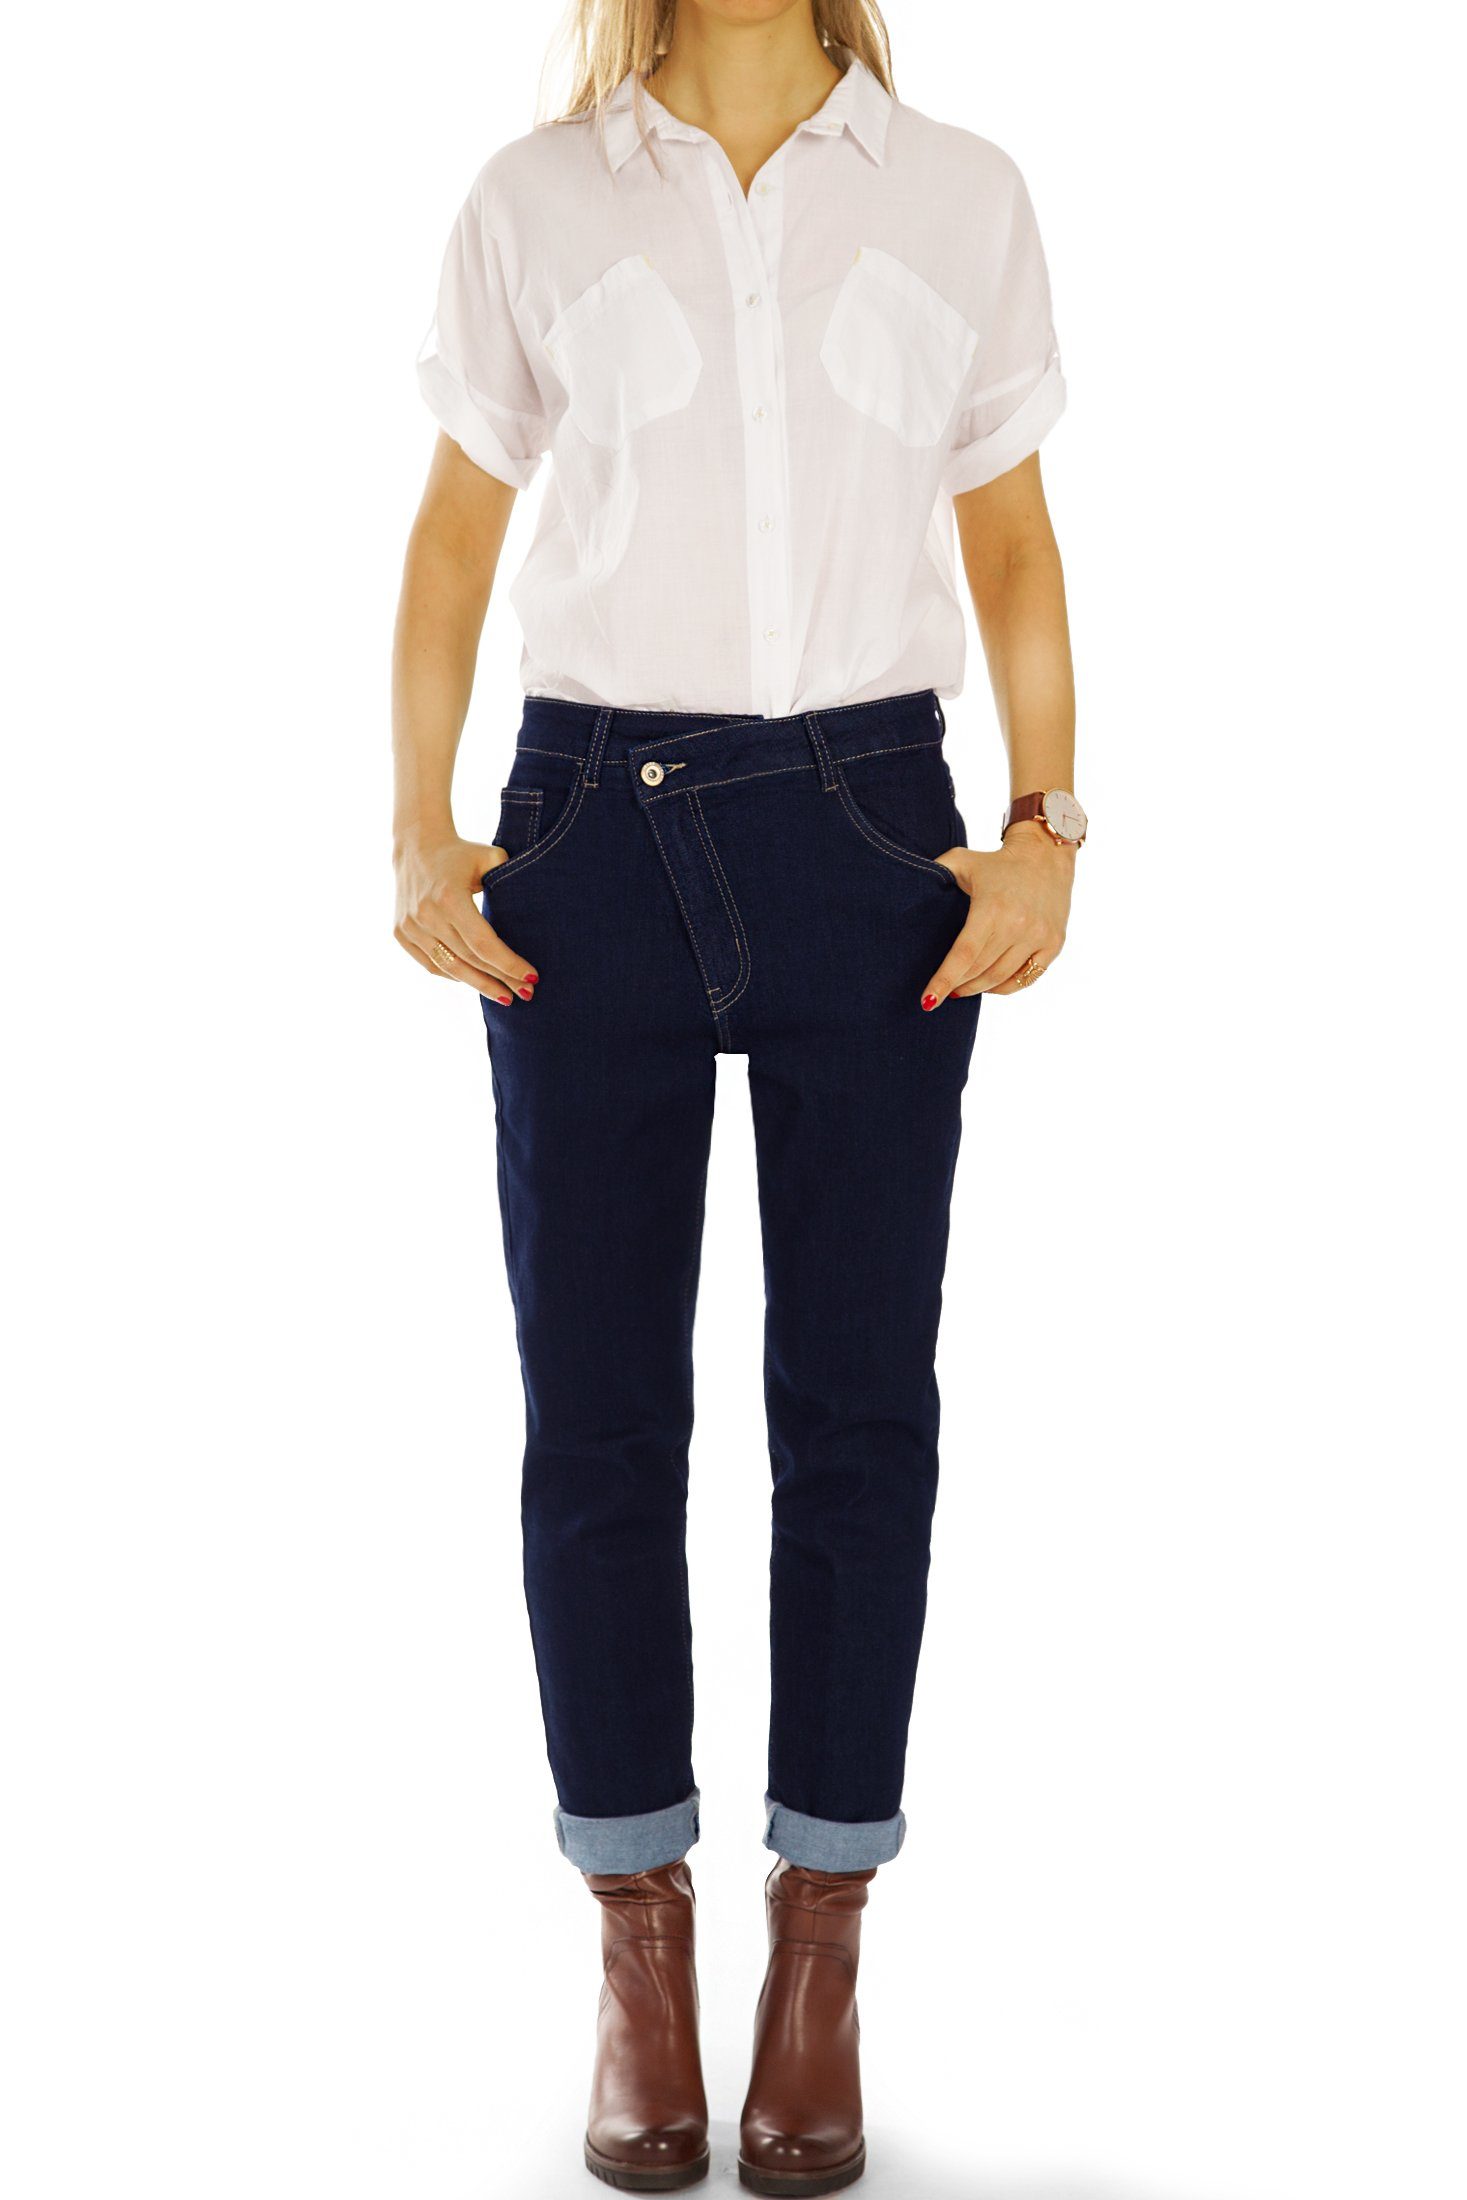 Jeans - Reißverschluss Damen be Mom-Jeans Mom - Jeans Stretch-Anteil, Boyfriend j3f schräger Hosen mit 5-Pocket-Style, Waist styled Medium